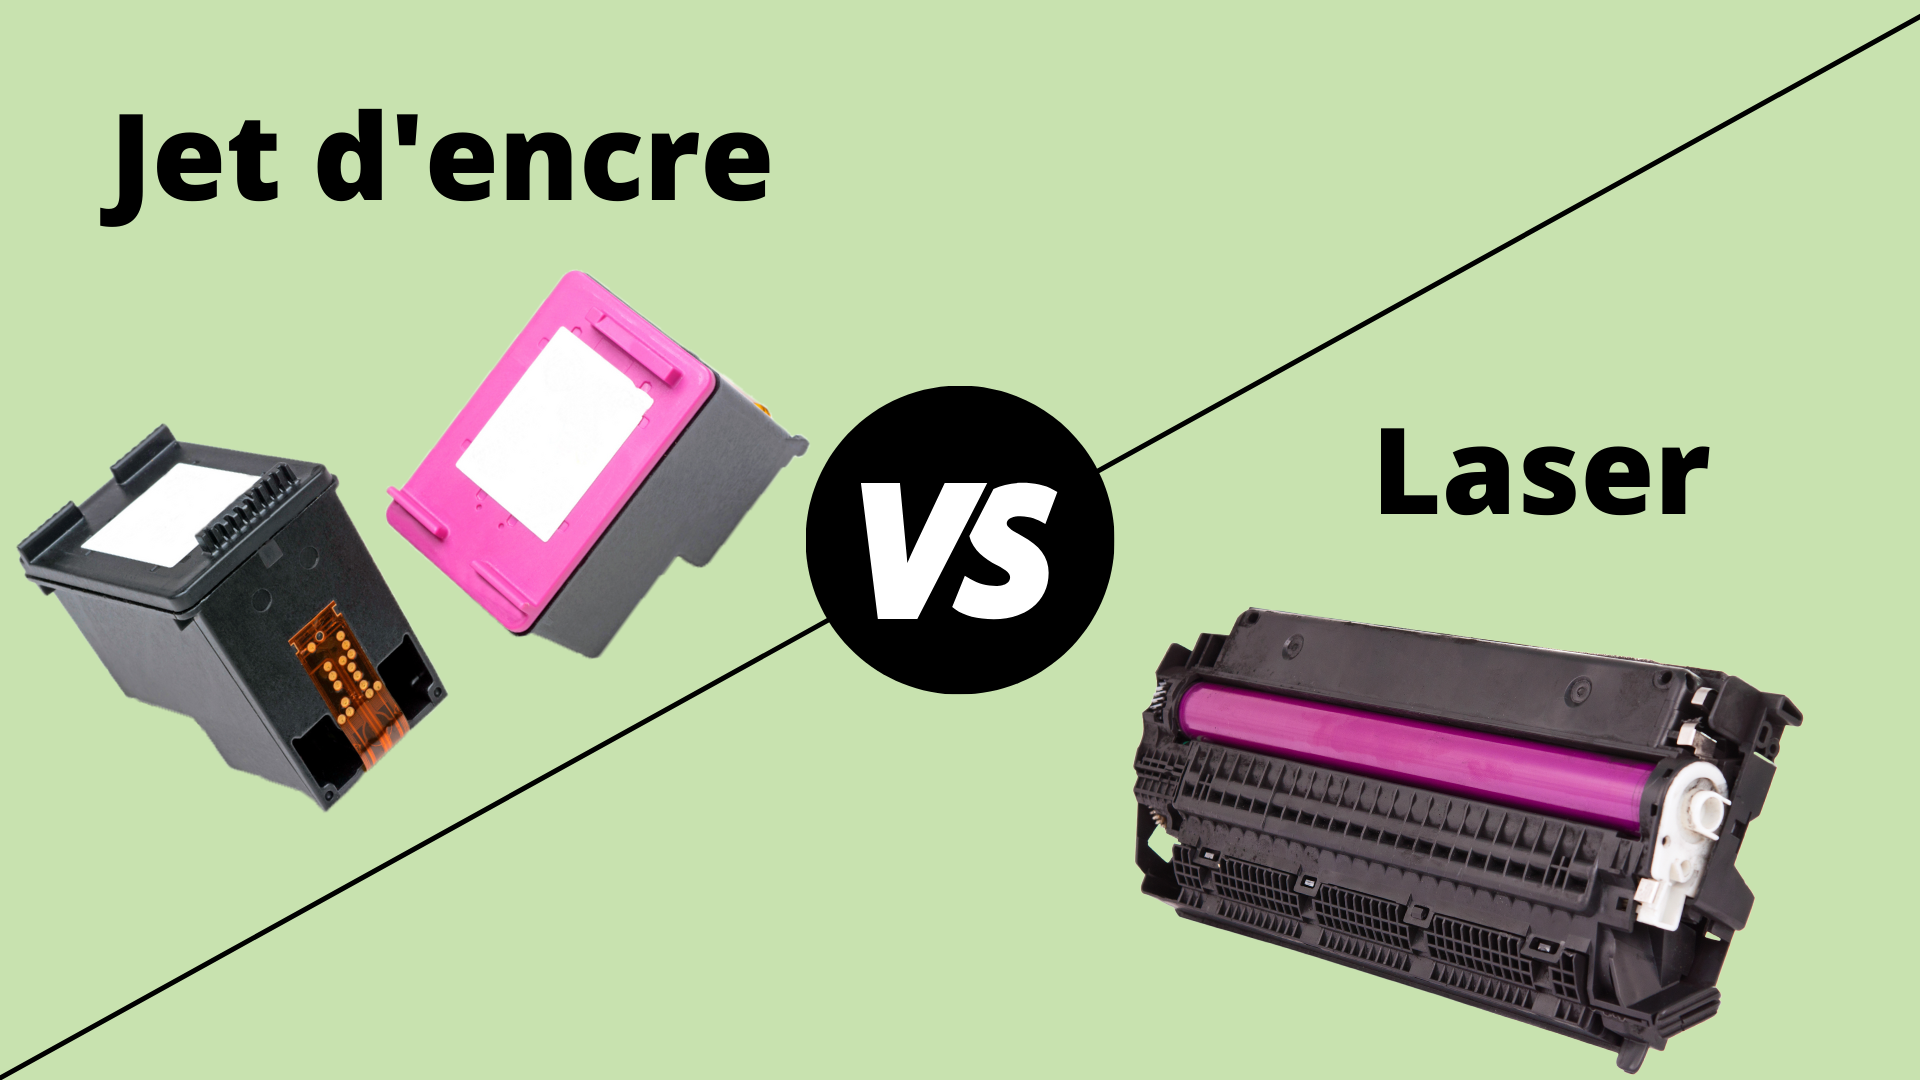 Imprimante jet d'encre et imprimante laser : laquelle choisir ?